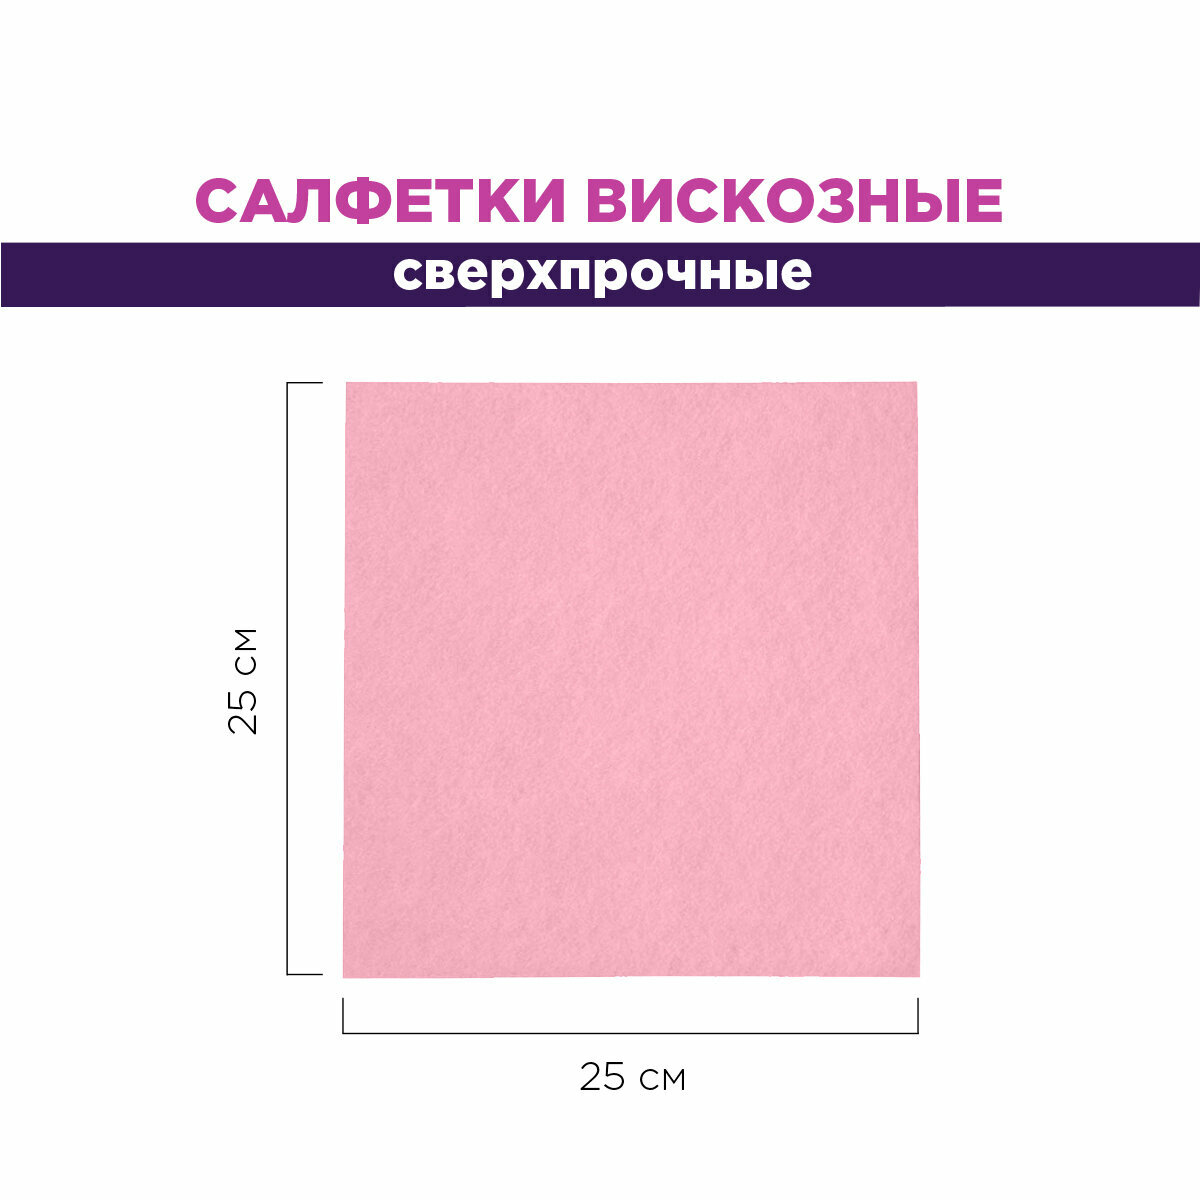 Салфетки вискозные, сверхпрочные, PATERRA, 40 шт. в рулоне, розовый, 25*25 см (406-154)